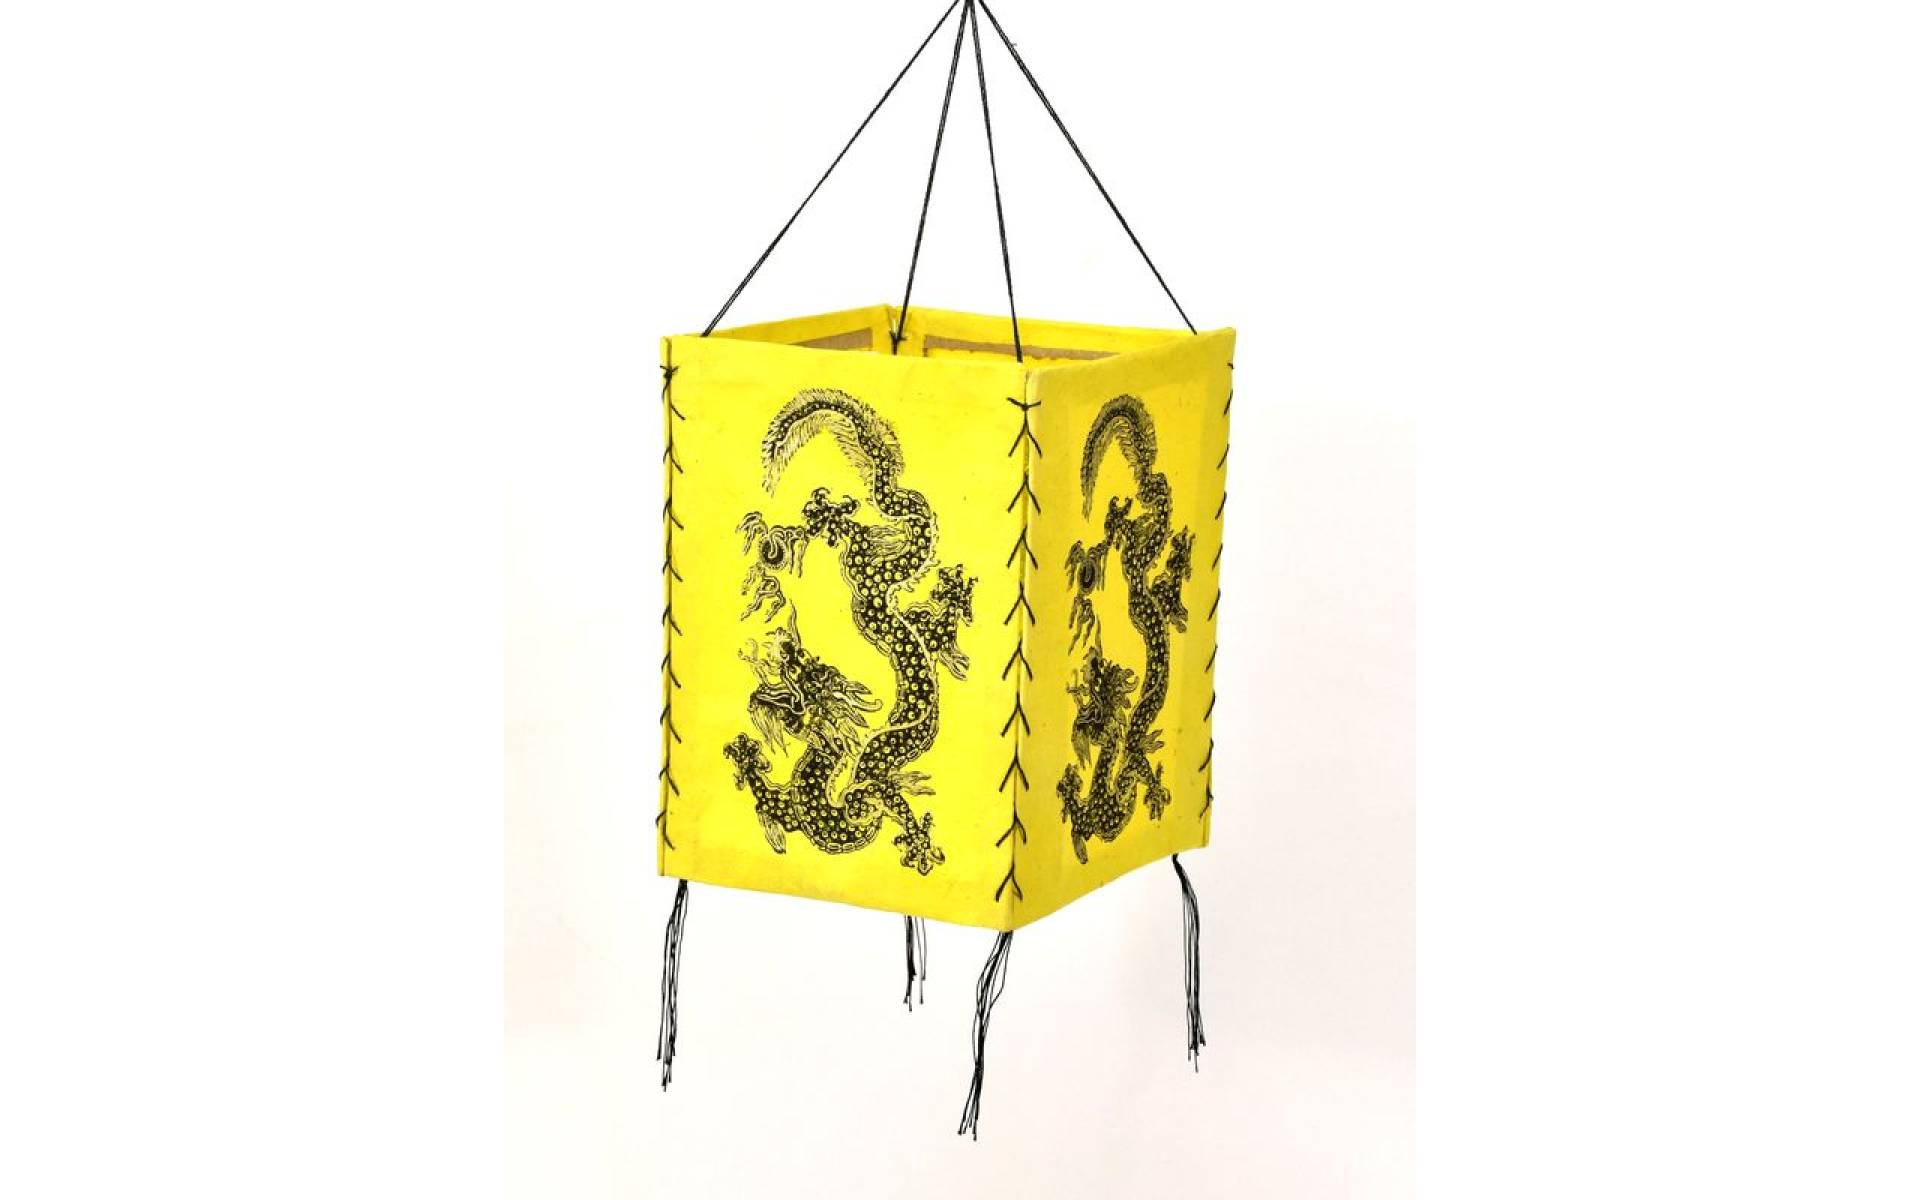 Štvorboký lampión - tienidlo so zlatou potlačou draka, žlté, 18x25cm